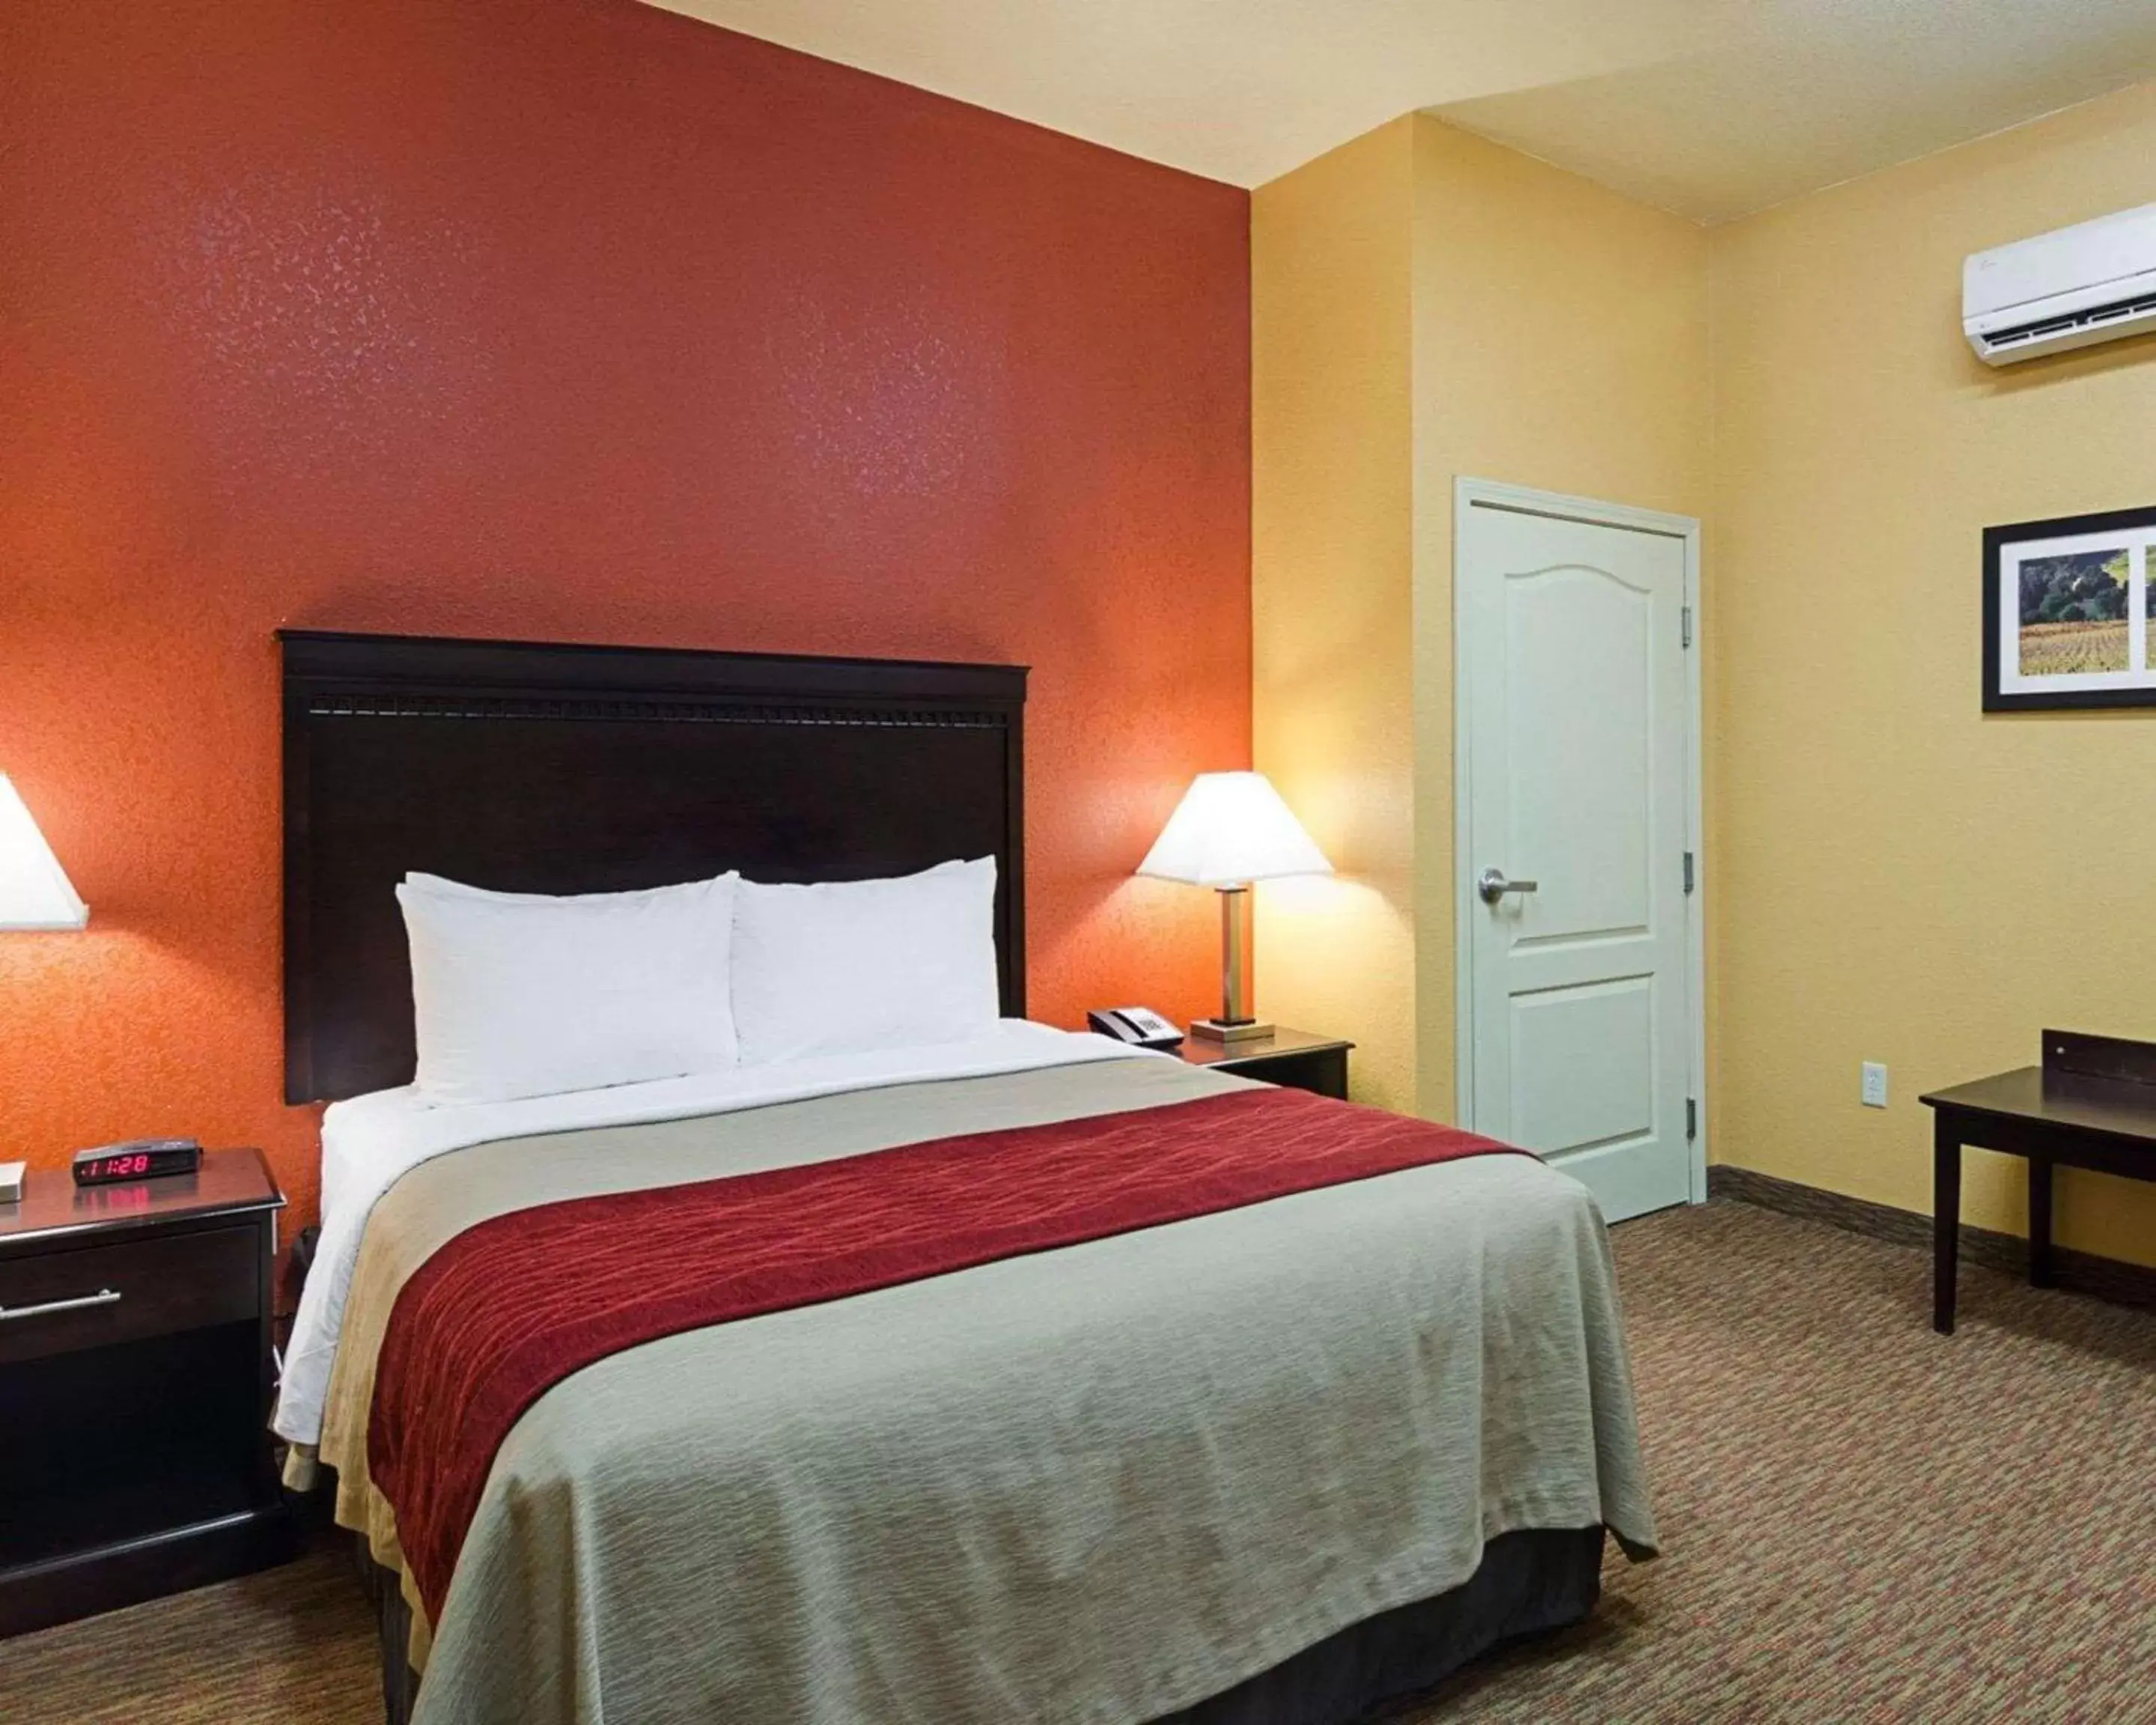 Bedroom, Bed in Comfort Inn & Suites Orange